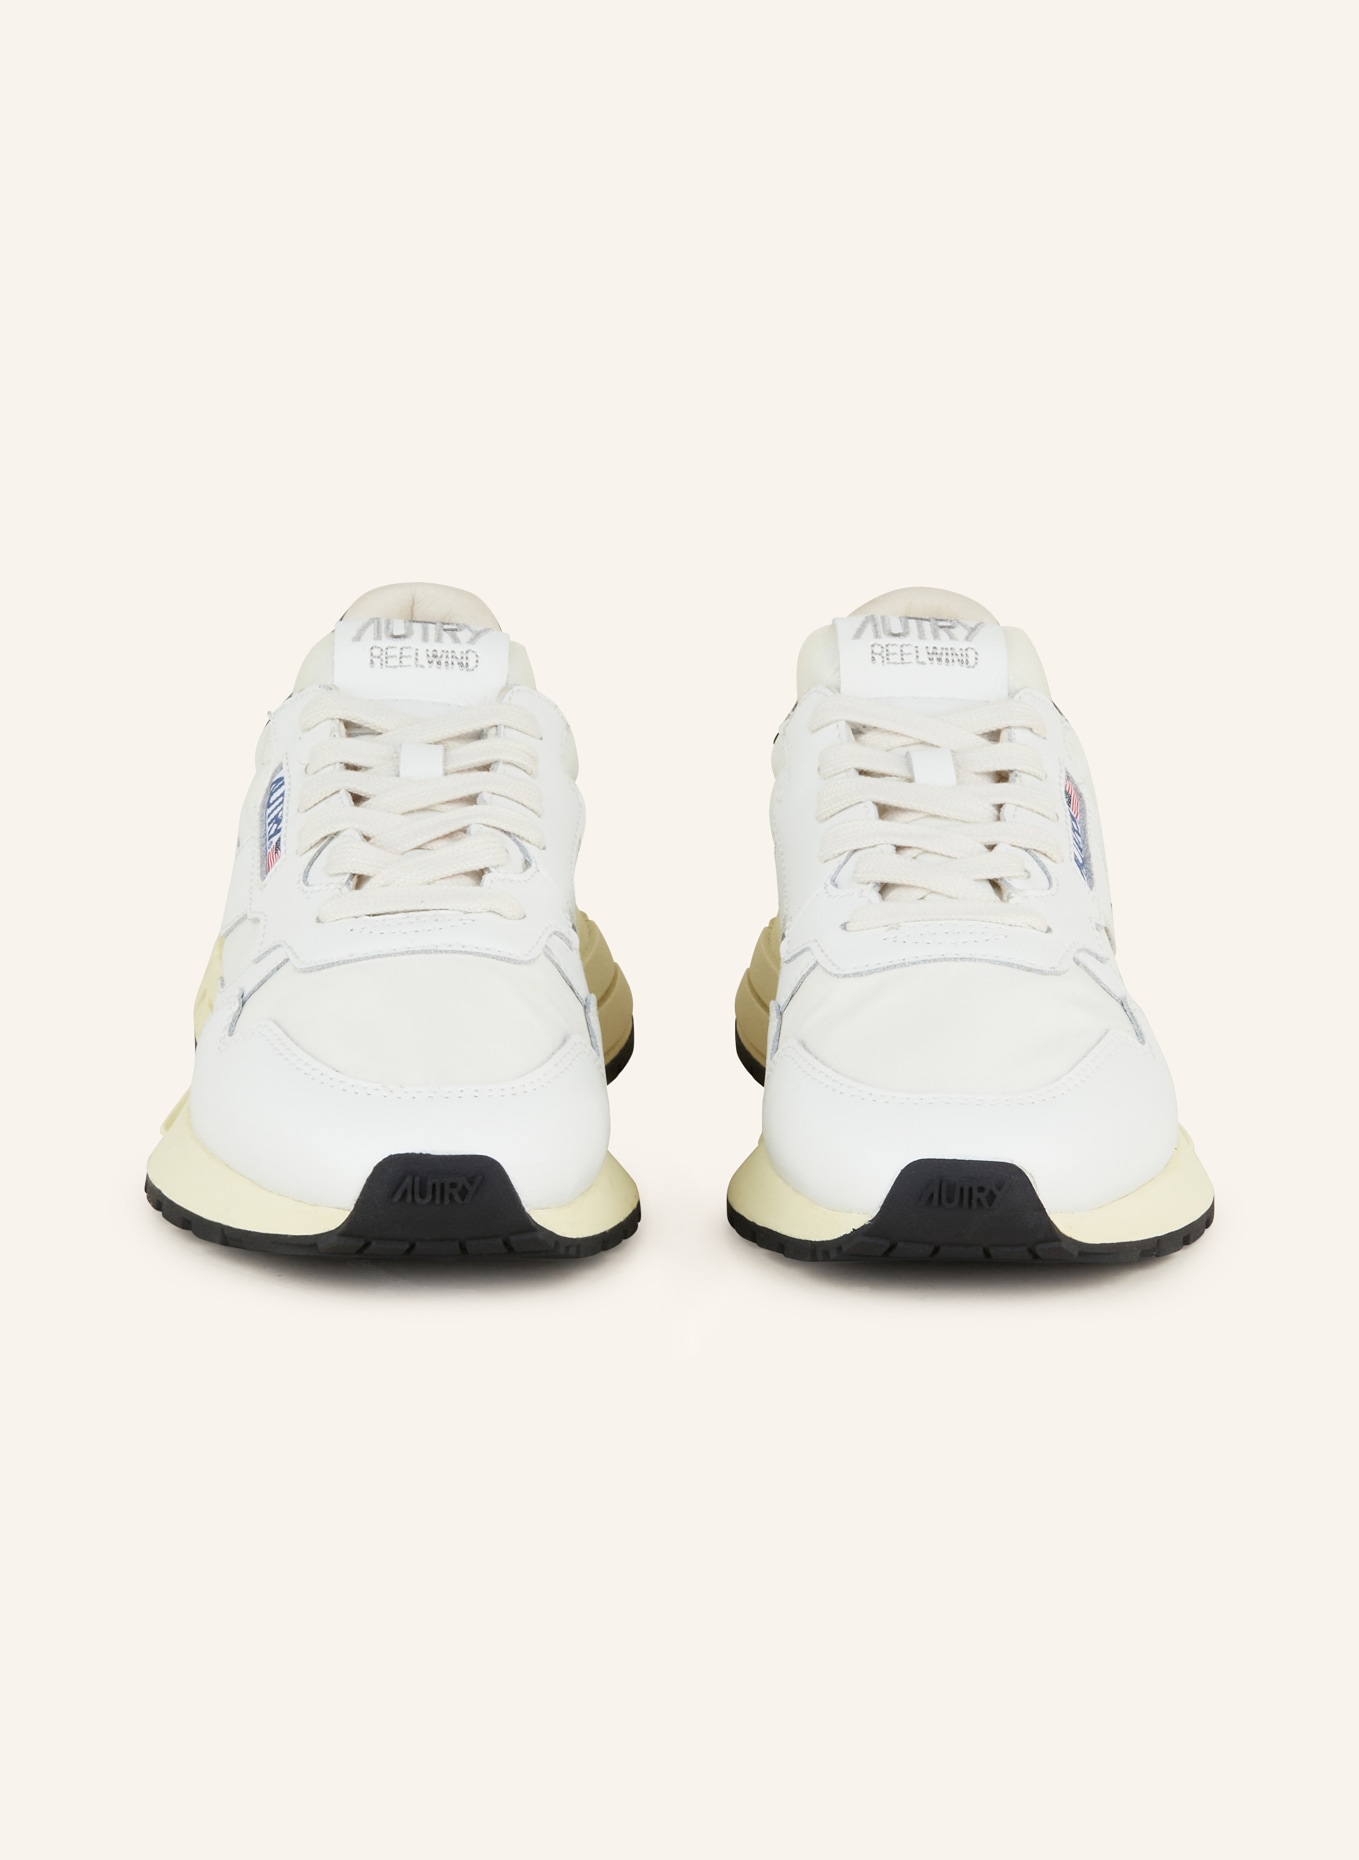 AUTRY Sneaker REELWIND, Farbe: WEISS (Bild 3)